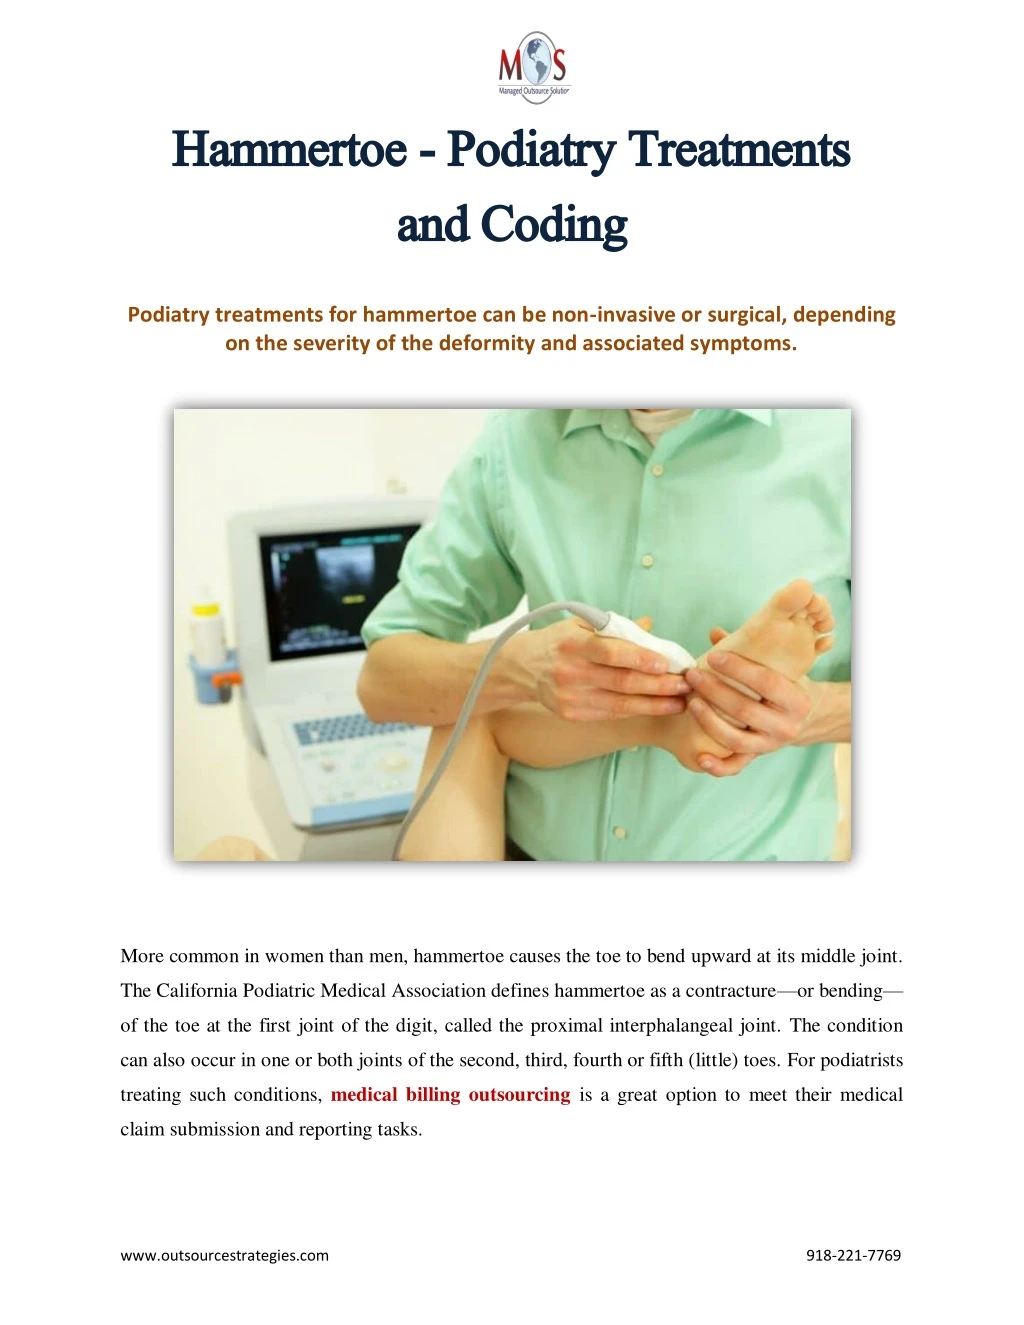 hammertoe hammertoe podiatry treatments podiatry